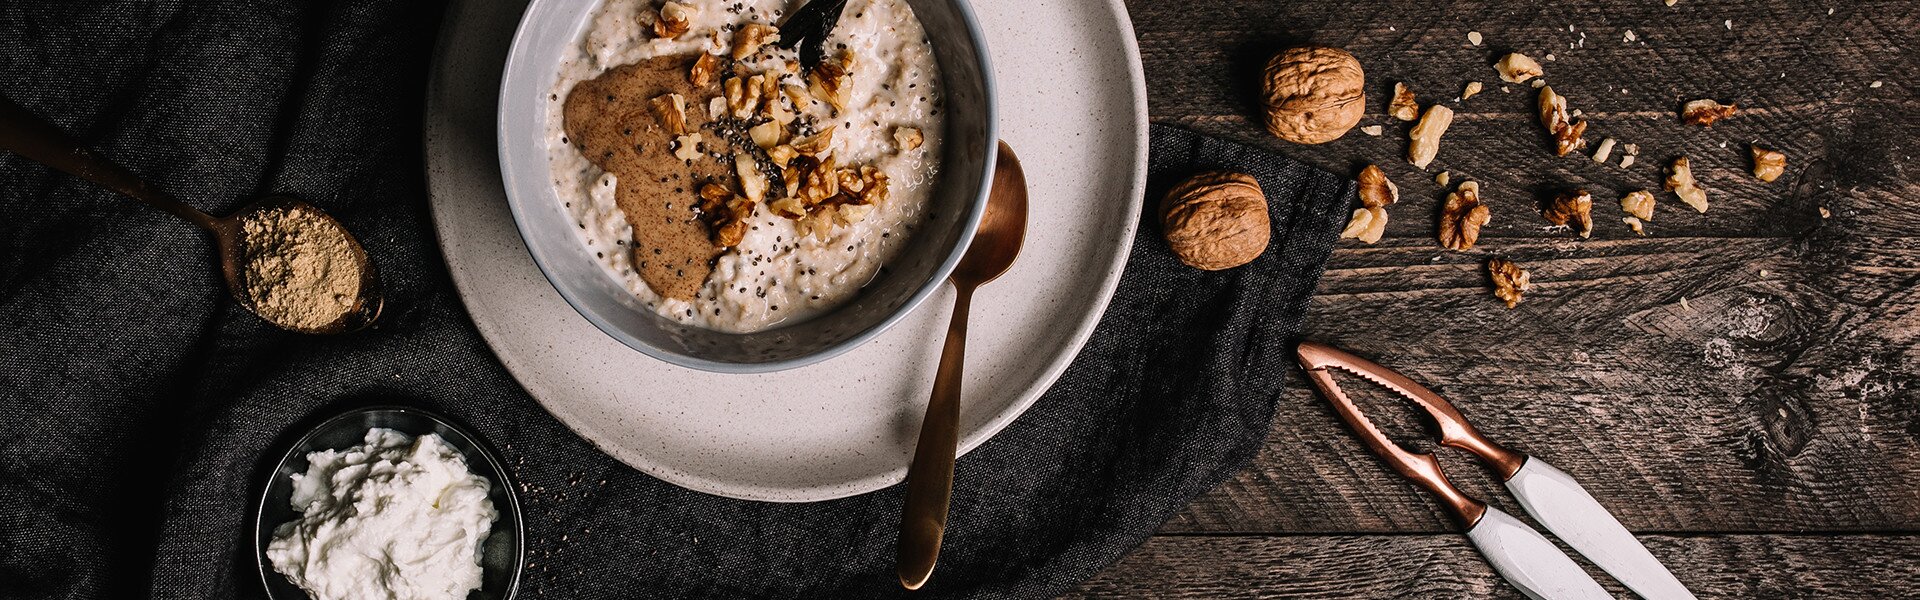 Proats als proteinhaltige Alternative zu klassischem Porridge